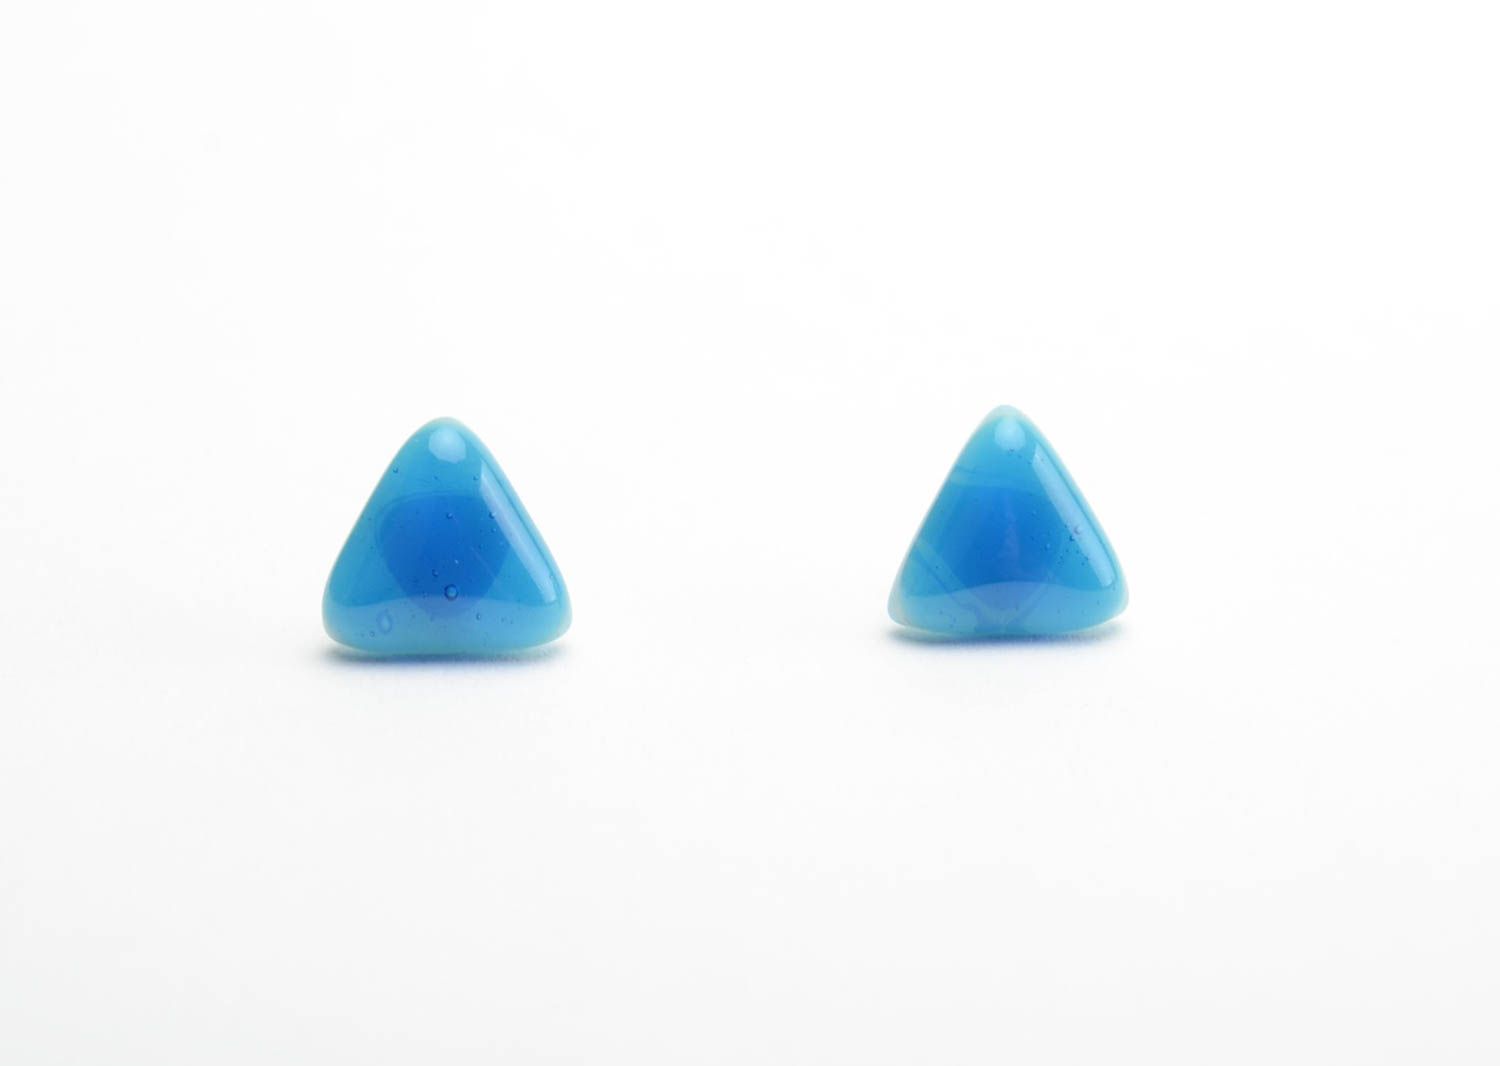 Handmade kleine dreieckige Ohrstecker aus Glas in Blau in Fusing Technik foto 5